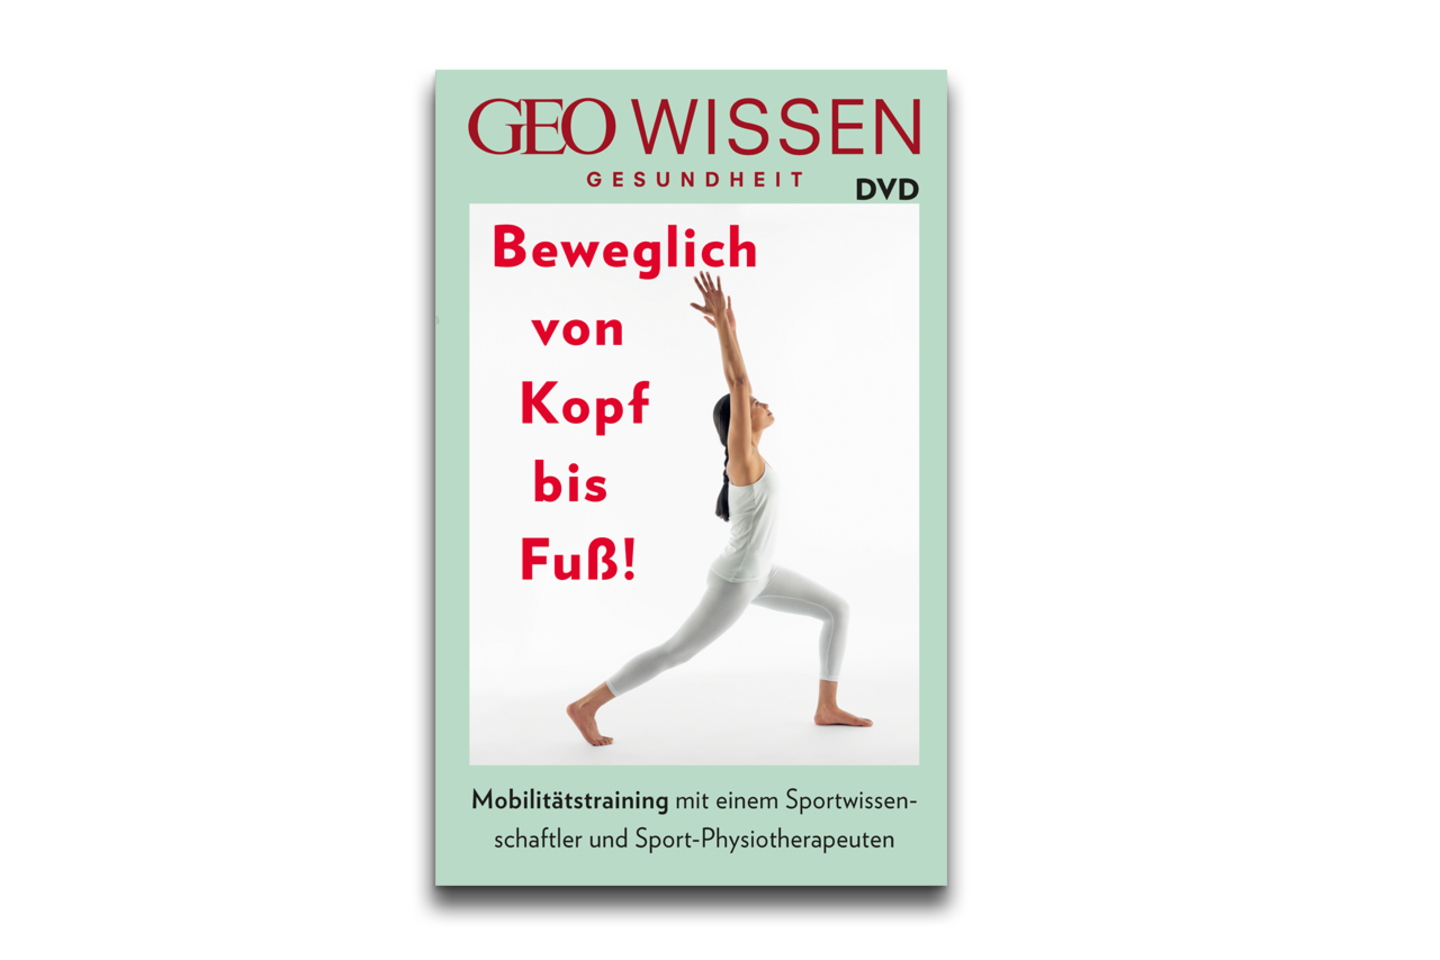 DVD zu GEO Wissen Gesundheit